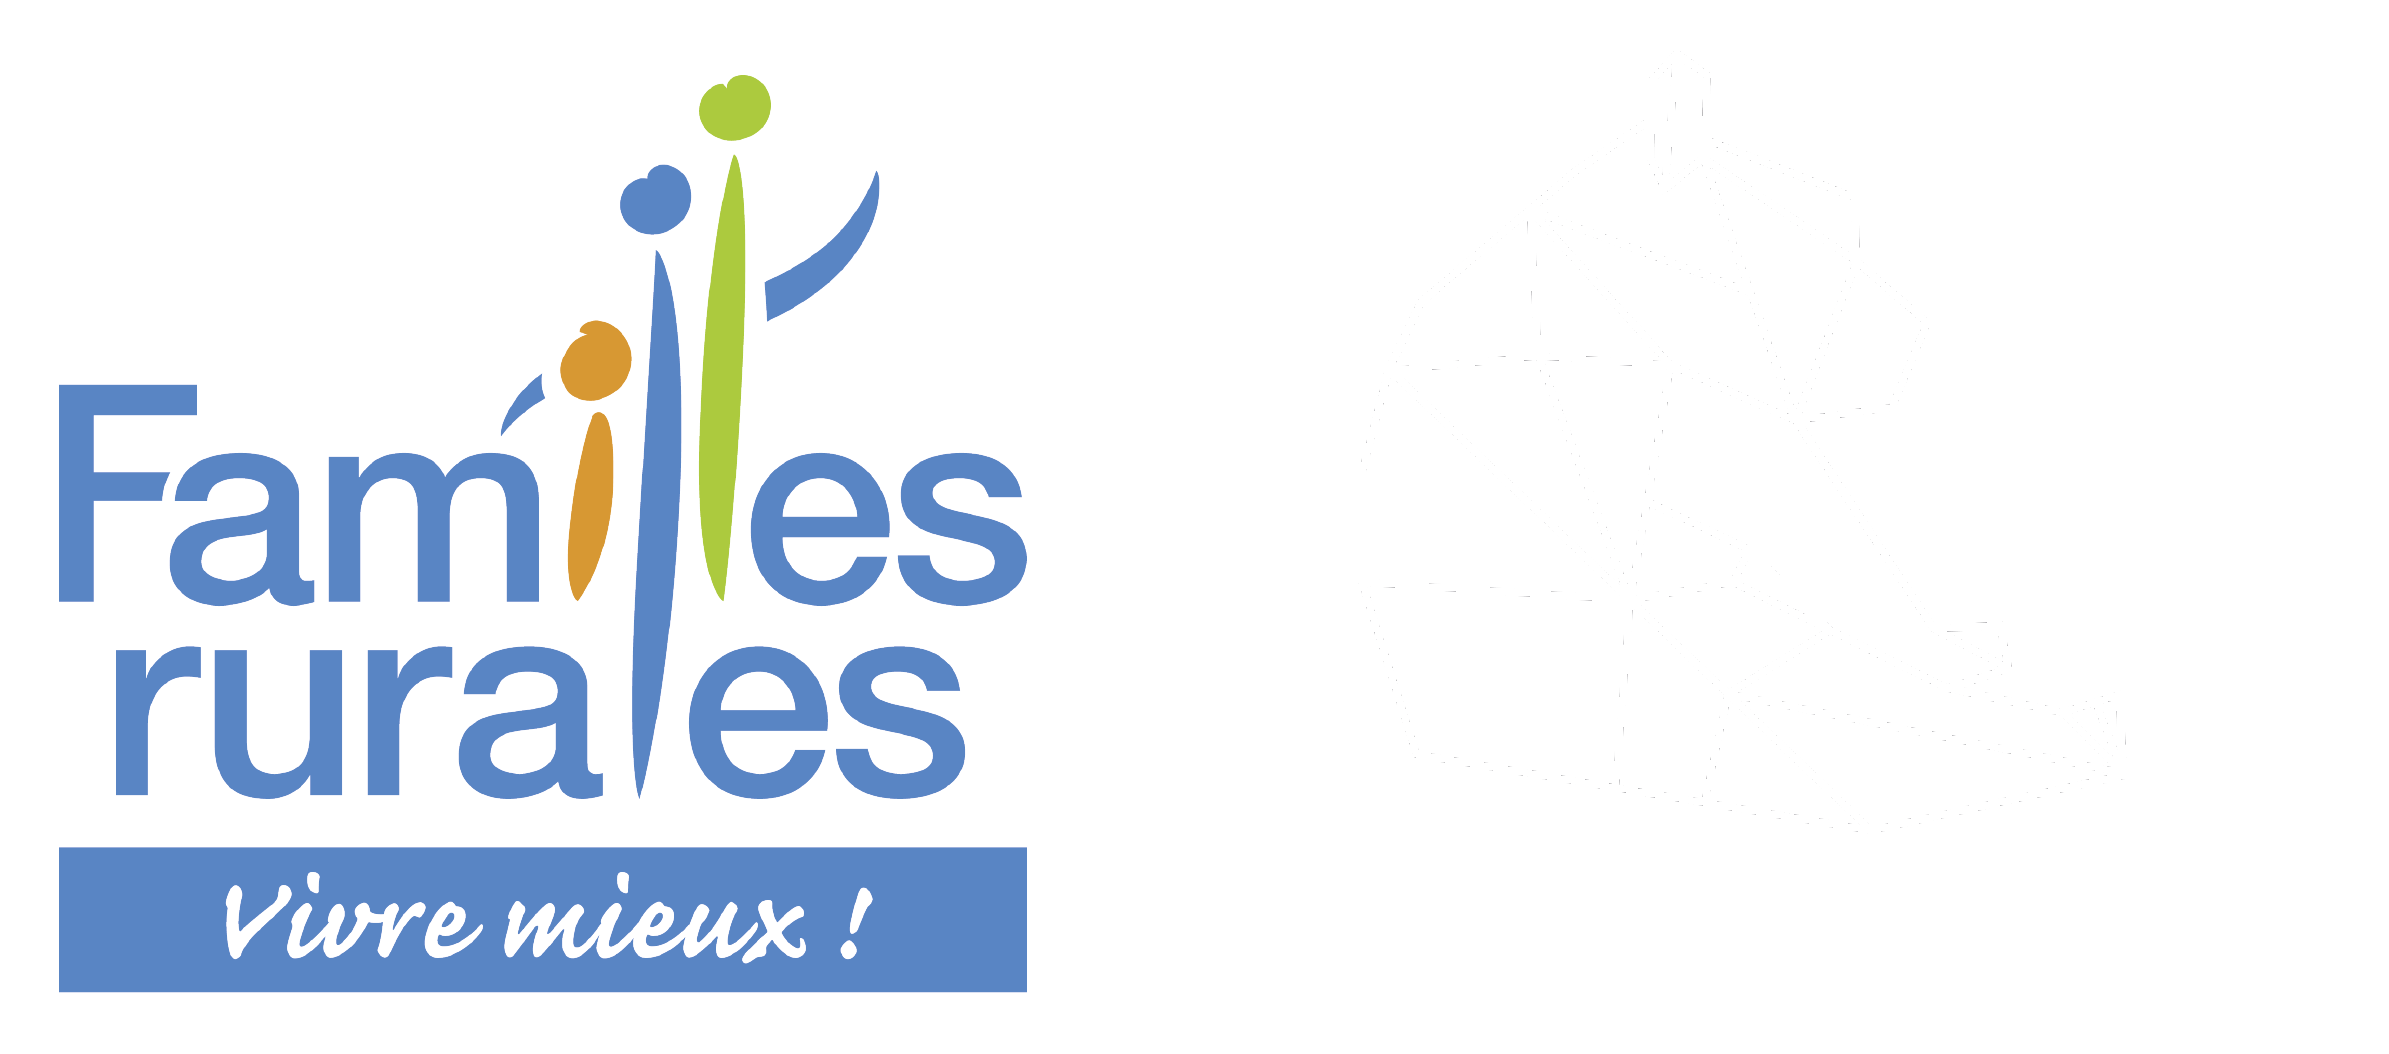 Crèche à Saint Georges d'Espéranche - Bienvenue sur le site de l'EAJE Les Bisounours. Découvrez la structure ainsi que toute notre équipe.